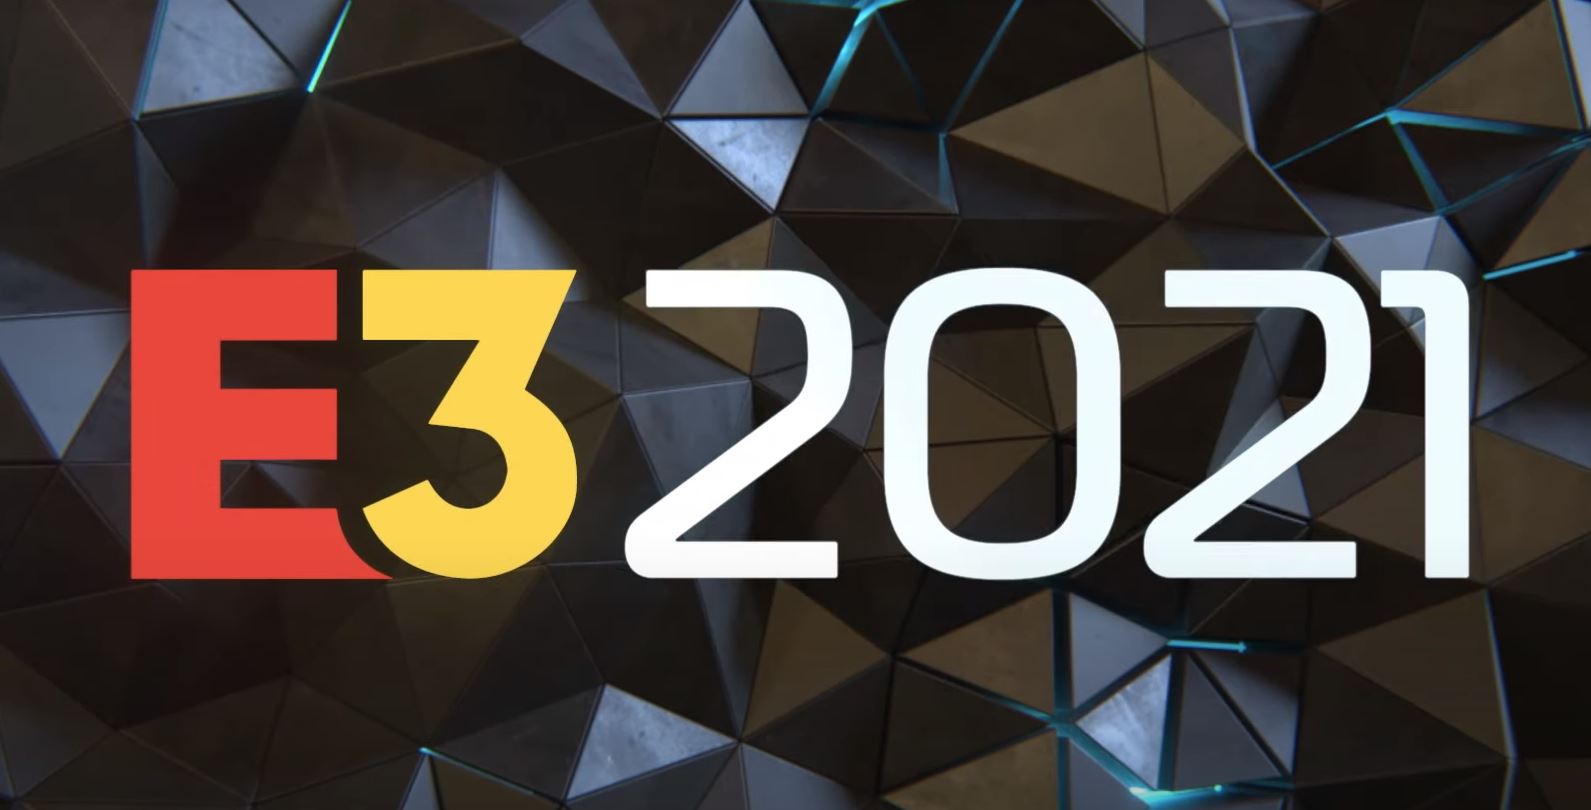 E3 2021: Começa neste sábado (12) e ganha teaser trailer oficial